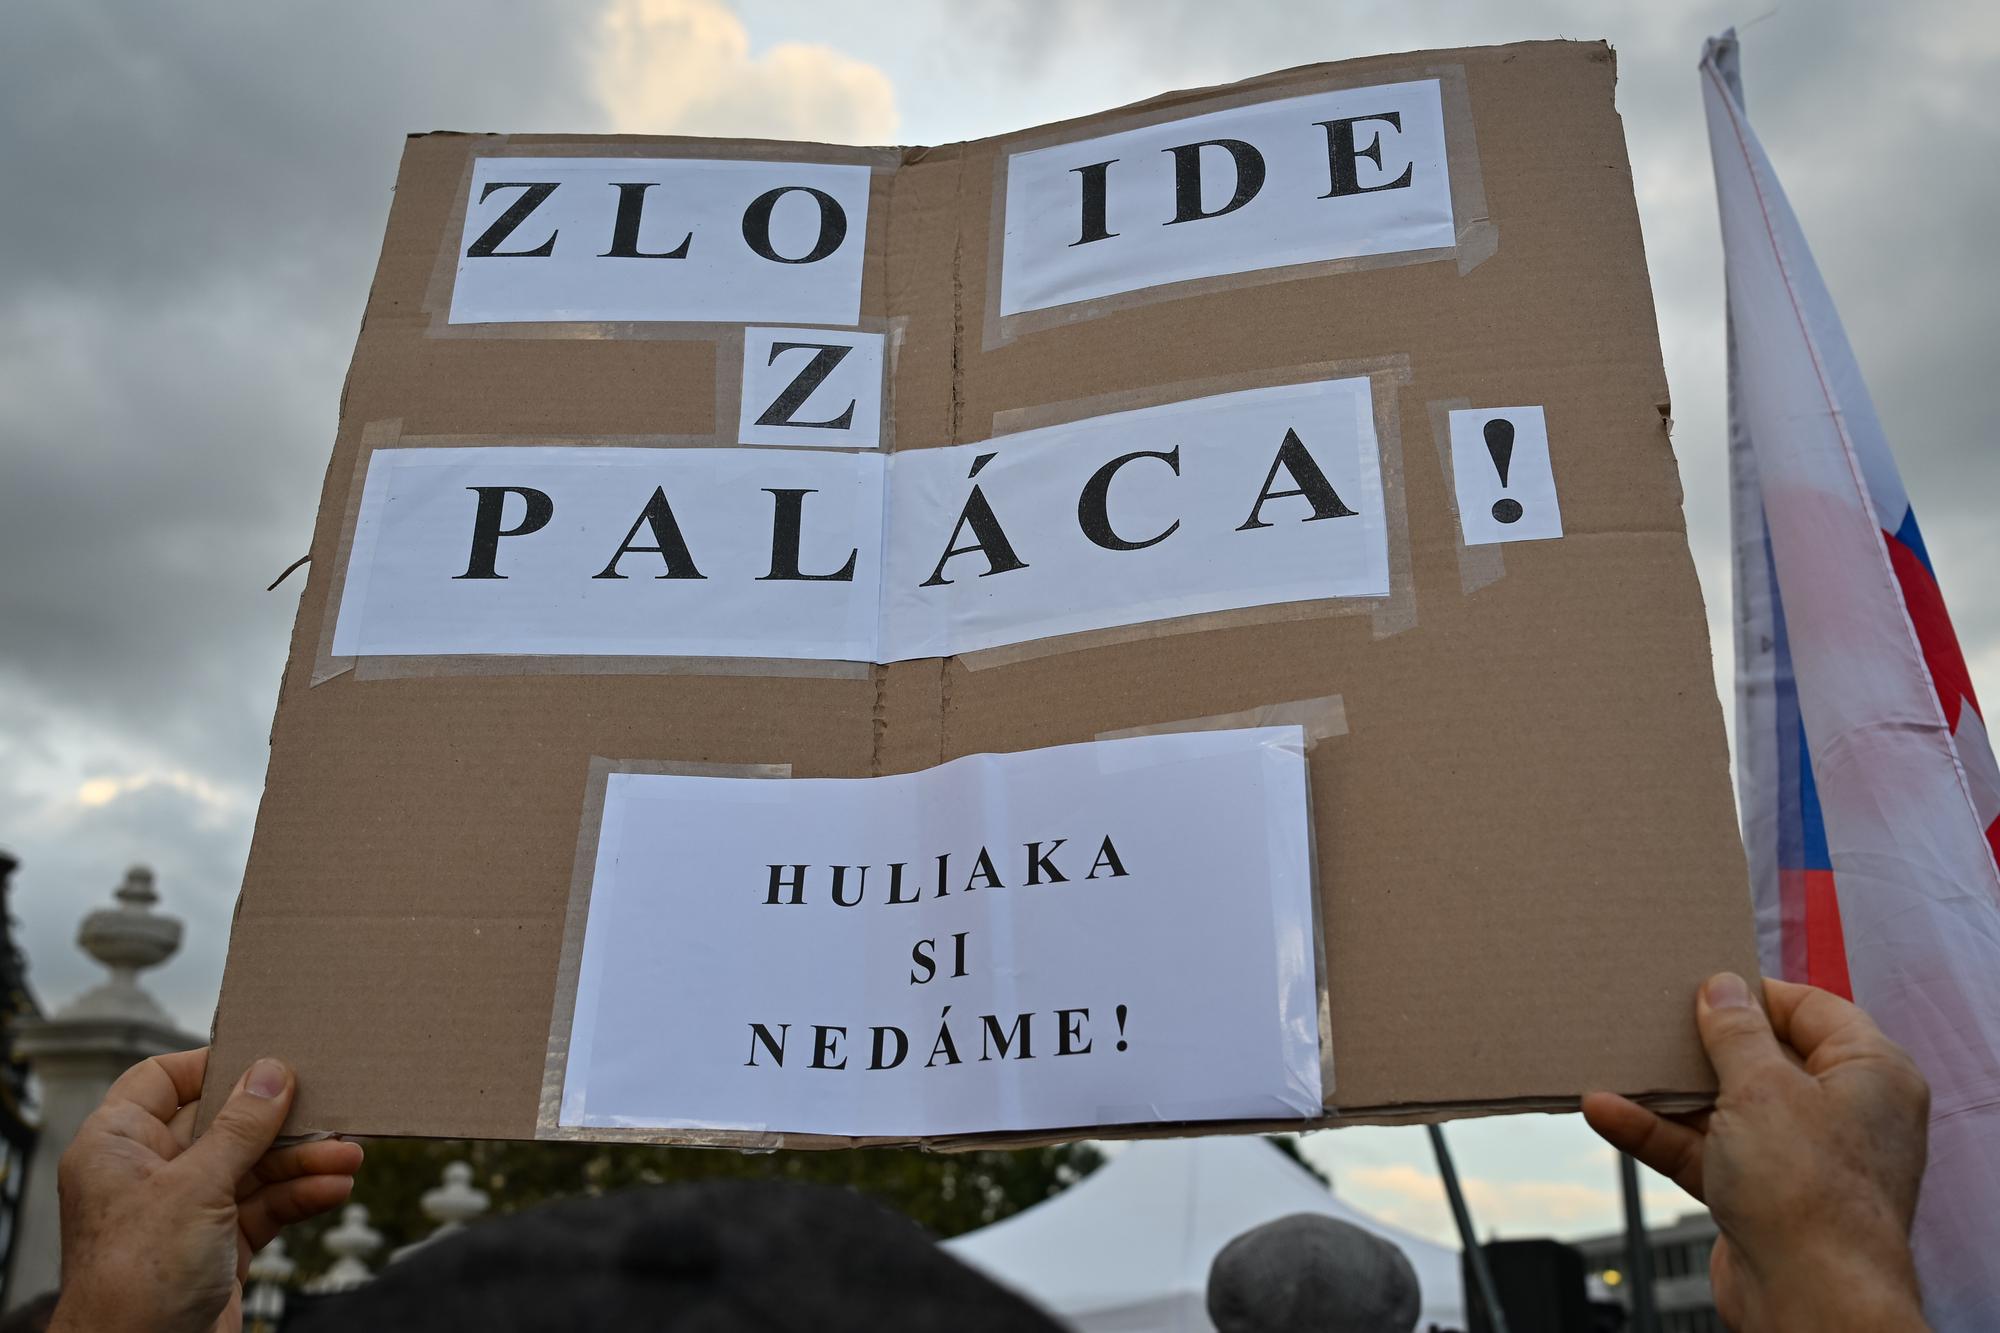 Verejné zhromaždenie na podporu Rudolfa Huliaka pred Prezidentským palácom